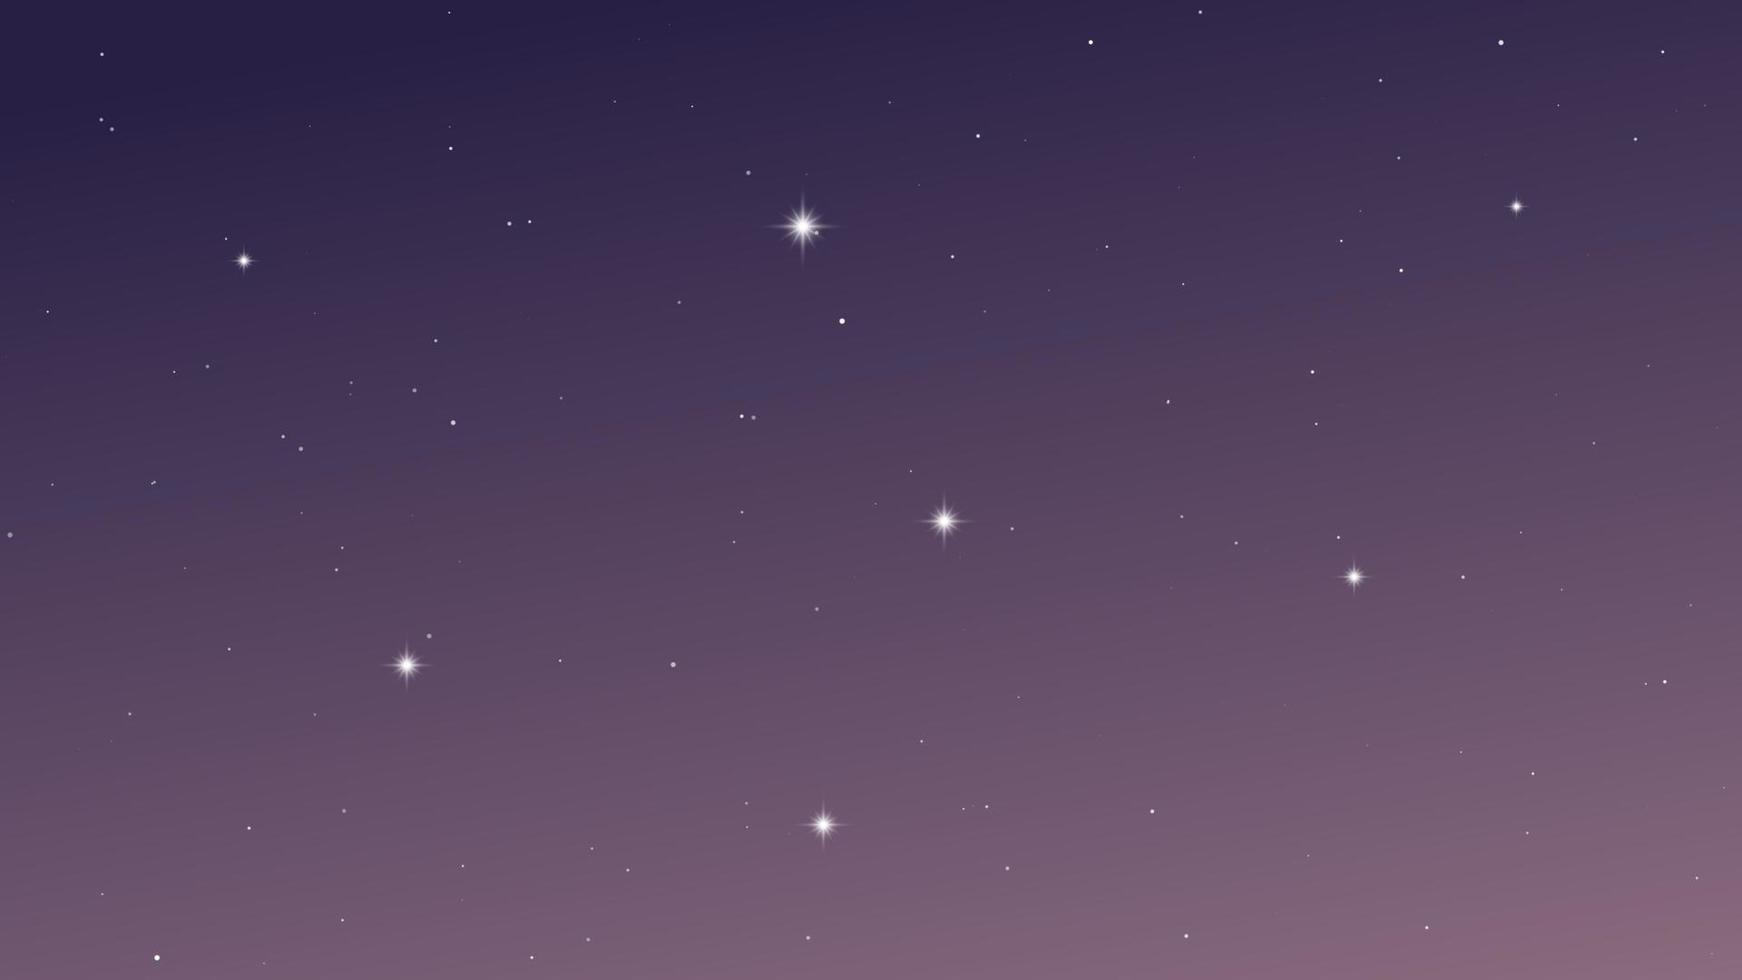 natt himmel med många stjärnor. abstrakt natur bakgrund med stardust i djup universum. vektor illustration.